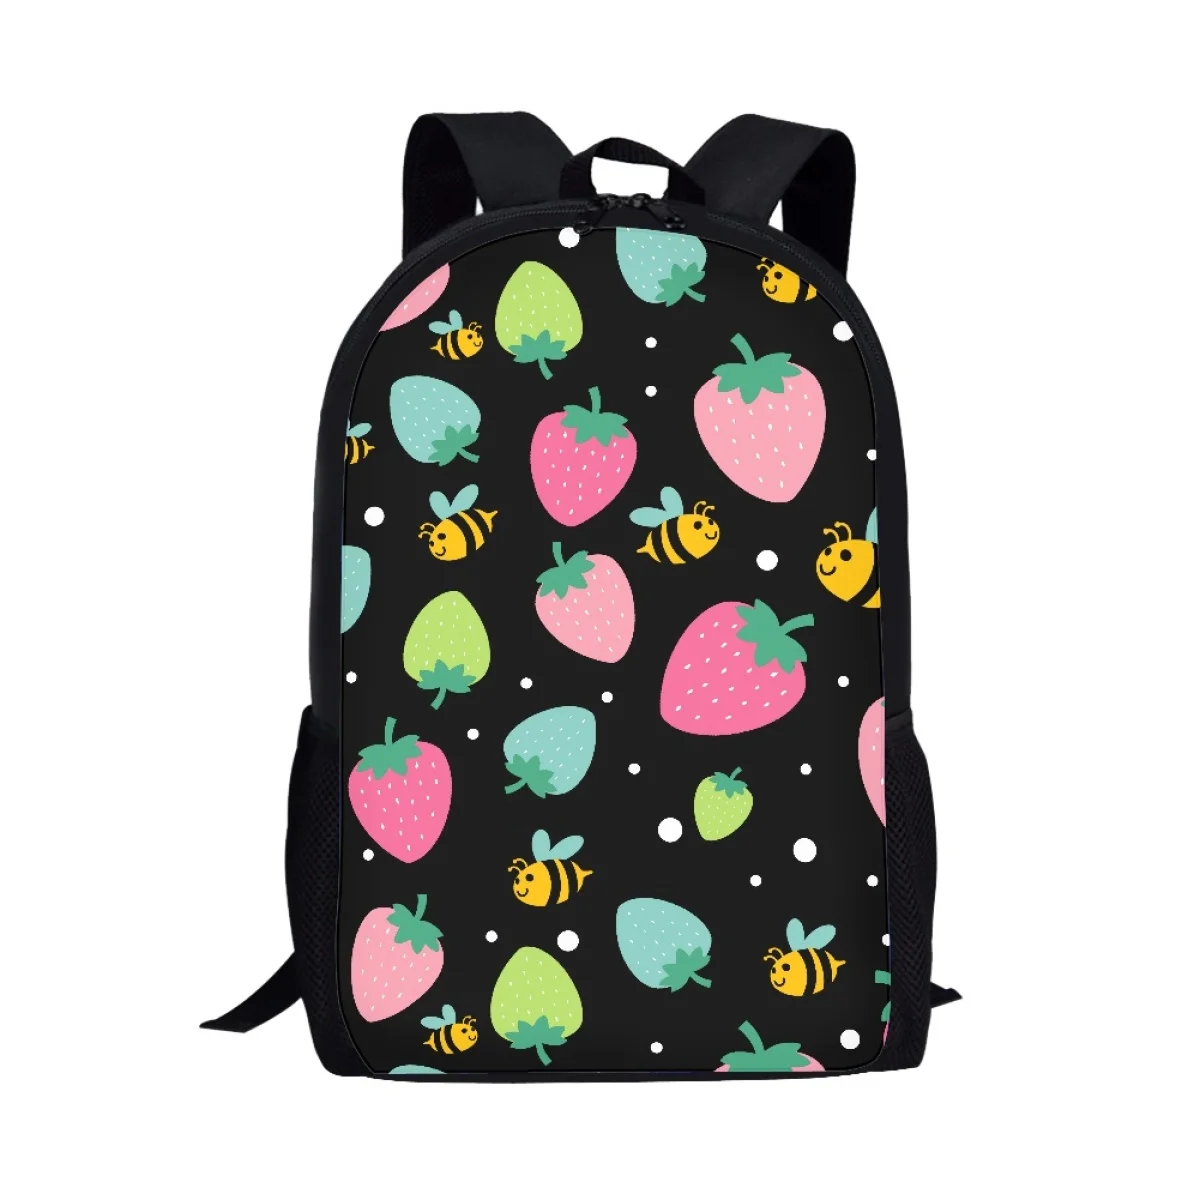 

Рюкзак для подростков с принтом клубники, новый трендовый прочный рюкзак с фруктовым принтом, дизайнерские студенческие сумки через плечо на все сезоны